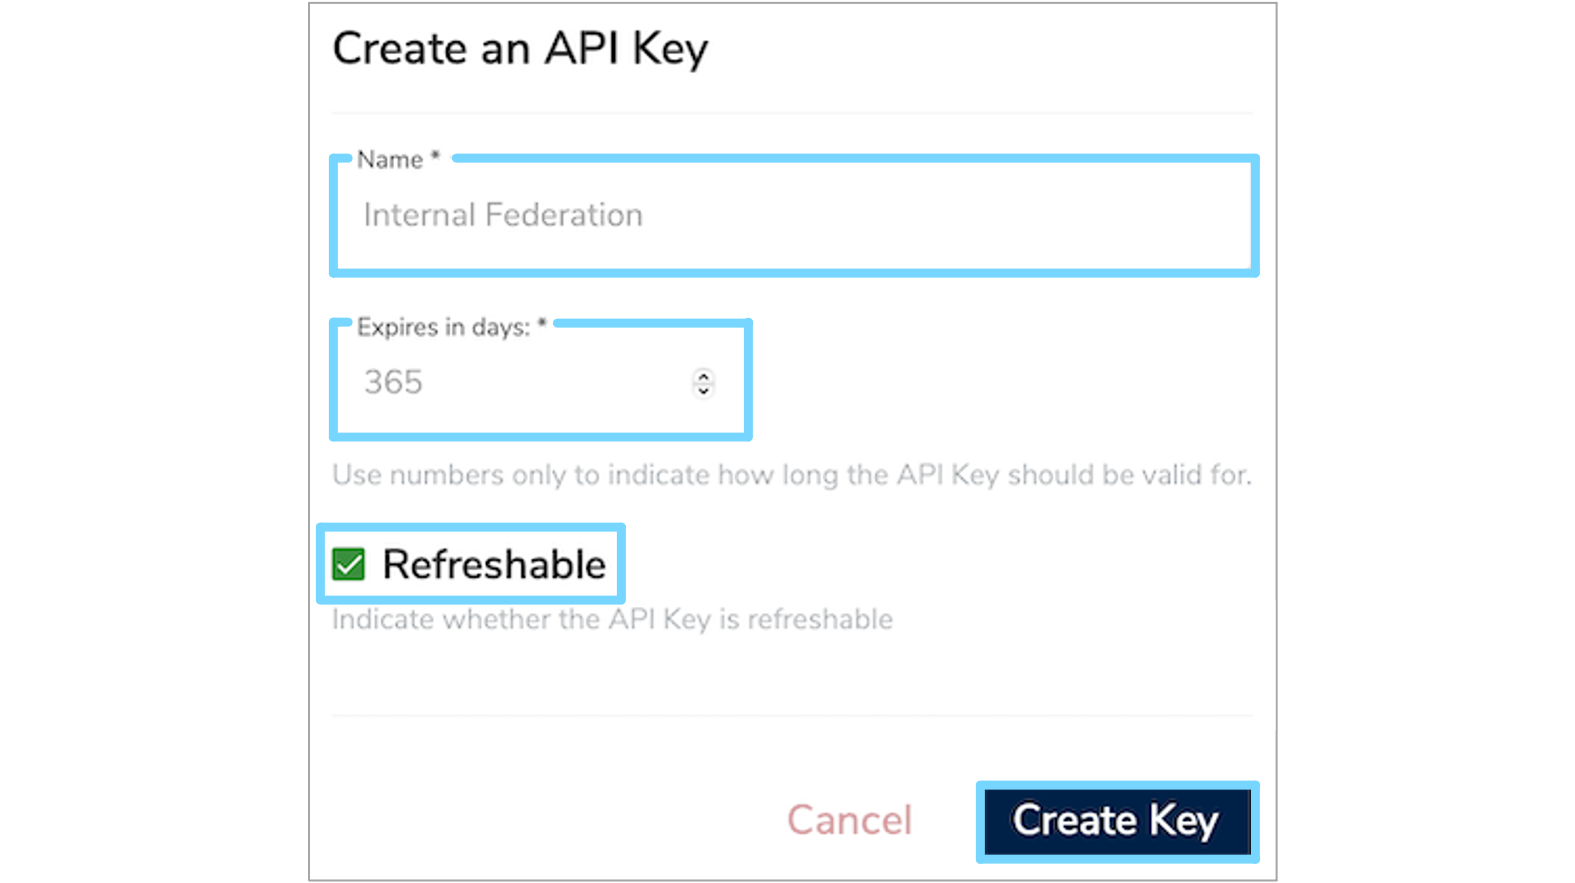 Dialog for creating a new API Key